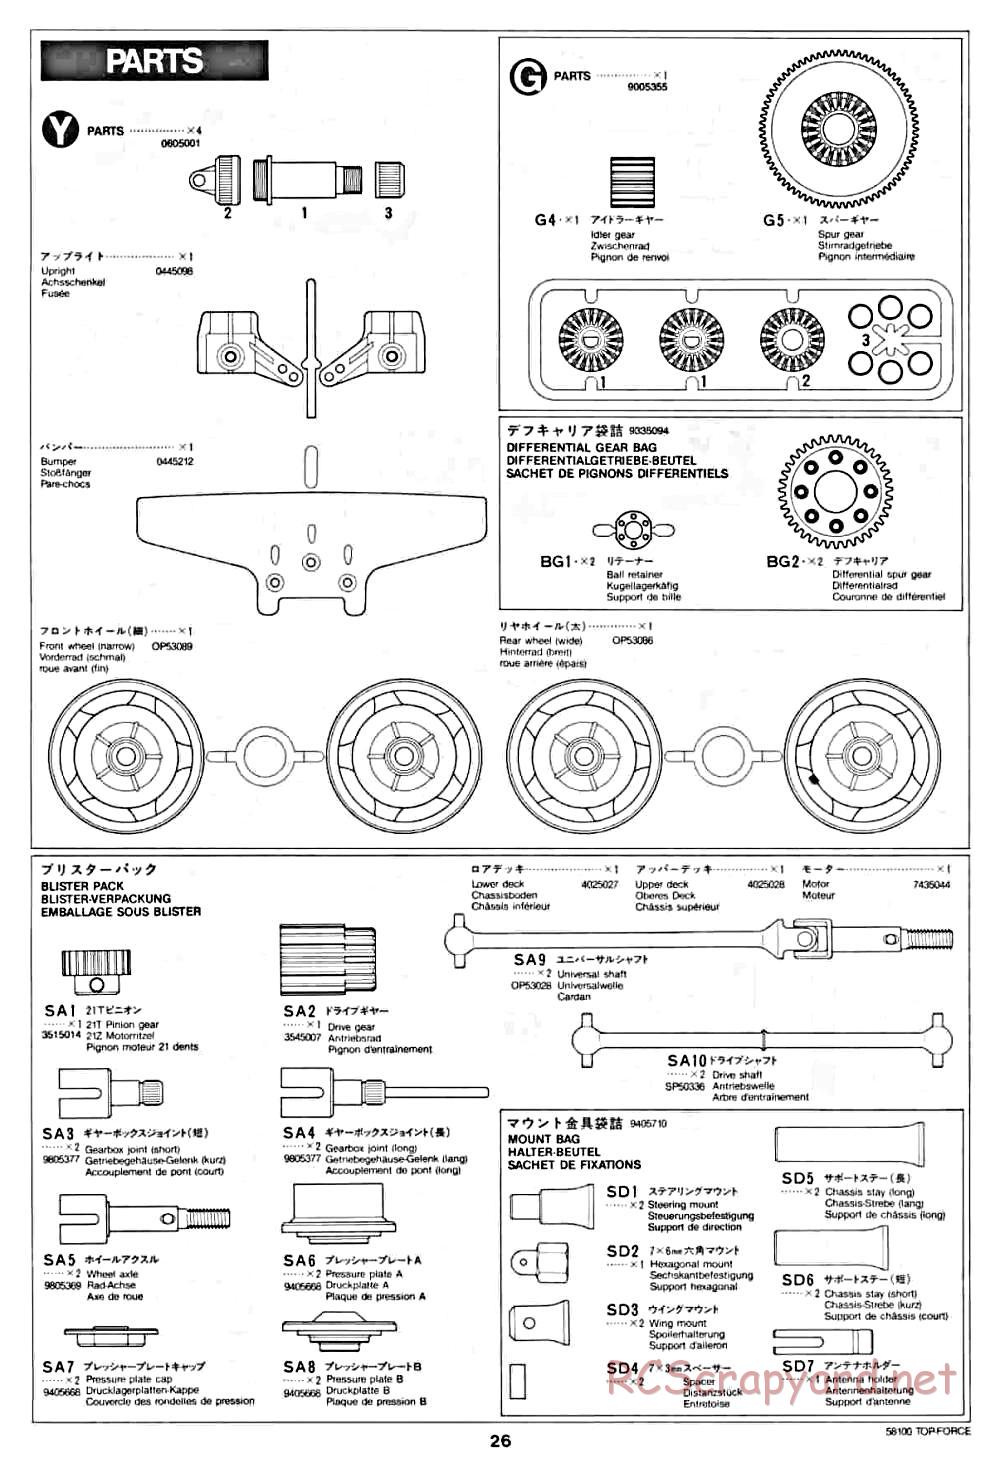 Tamiya - Top Force - 58100 - Manual - Page 26